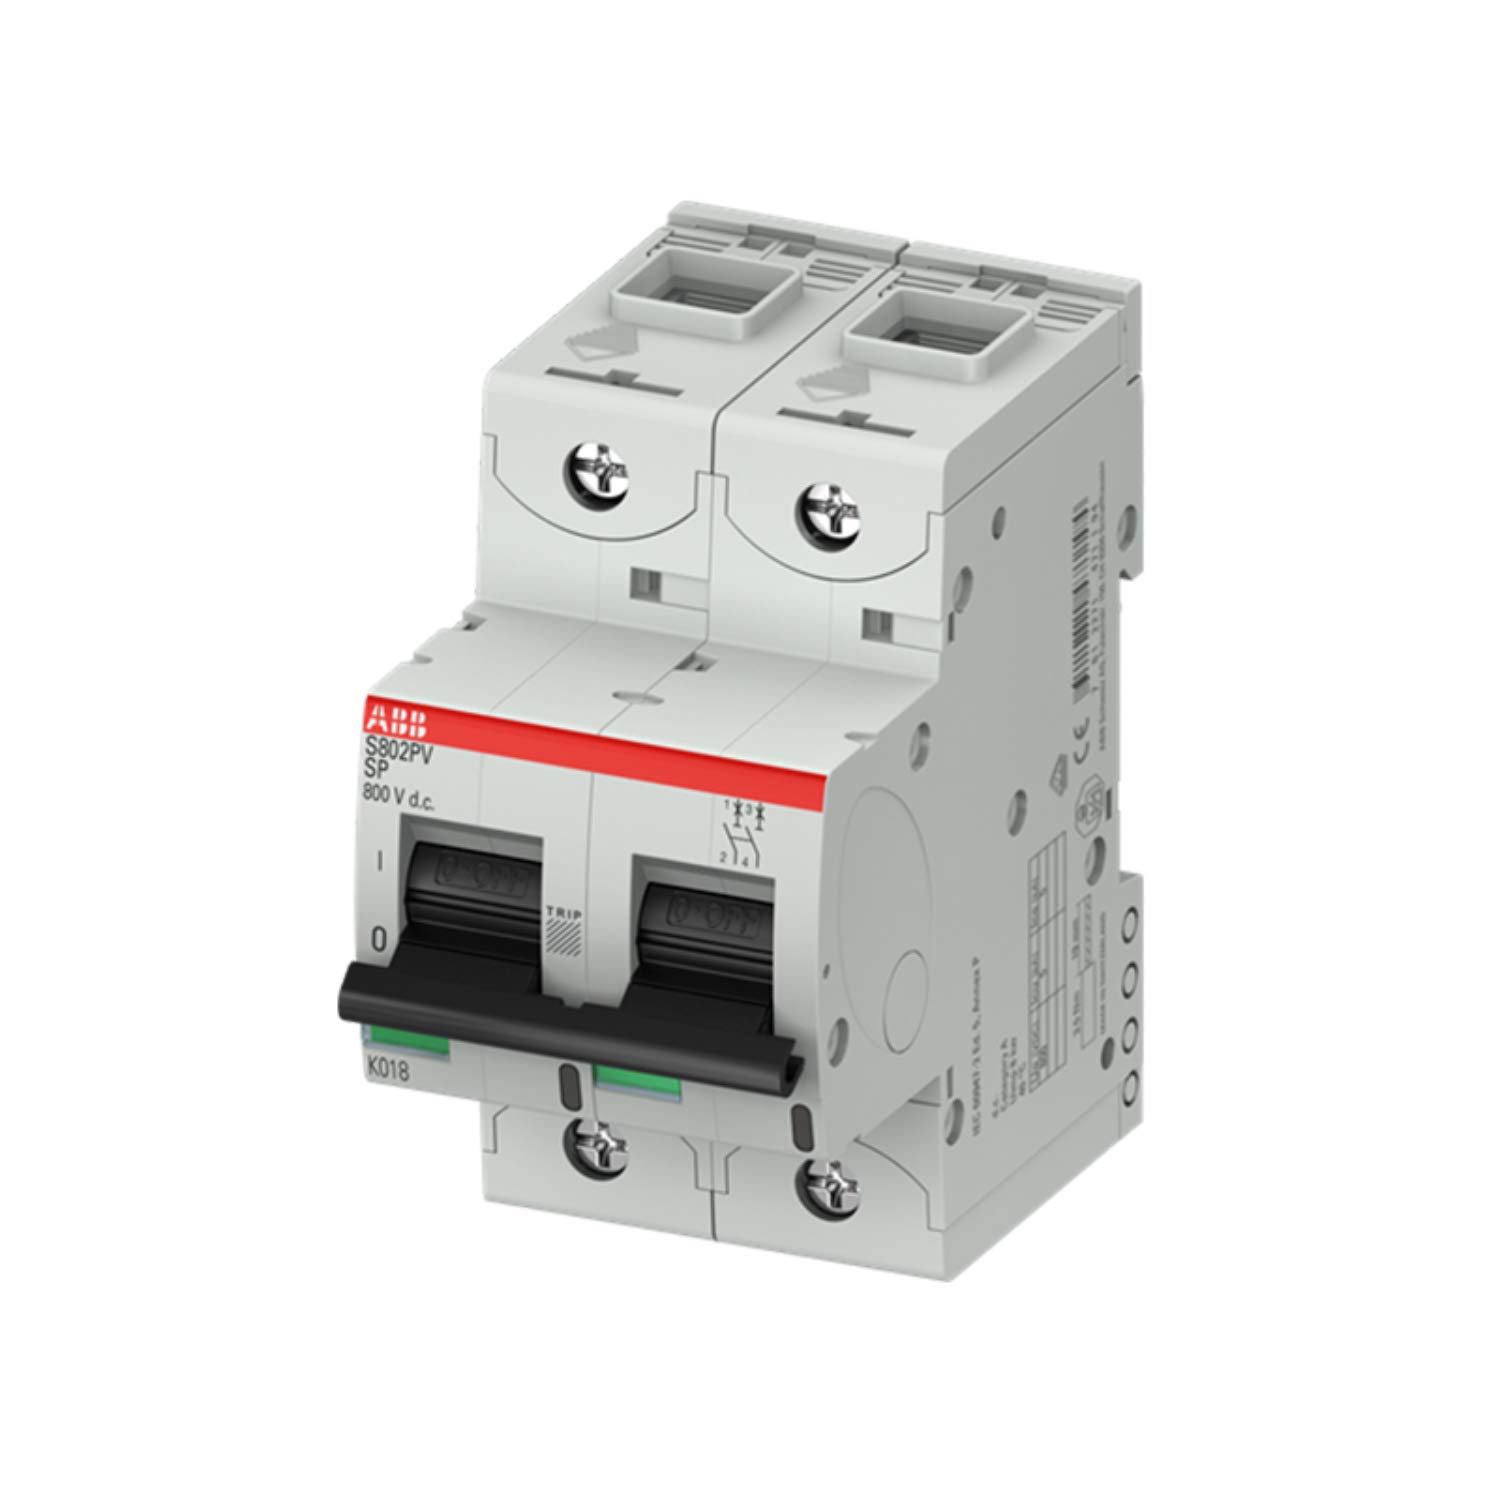 Automatischer Schalter S802PV-SP40, 2 Kontakte, 40 A, maximale Schnittleistung von 5 kA bis 800 V (Referenz: ABB 2CCF019603R0001)